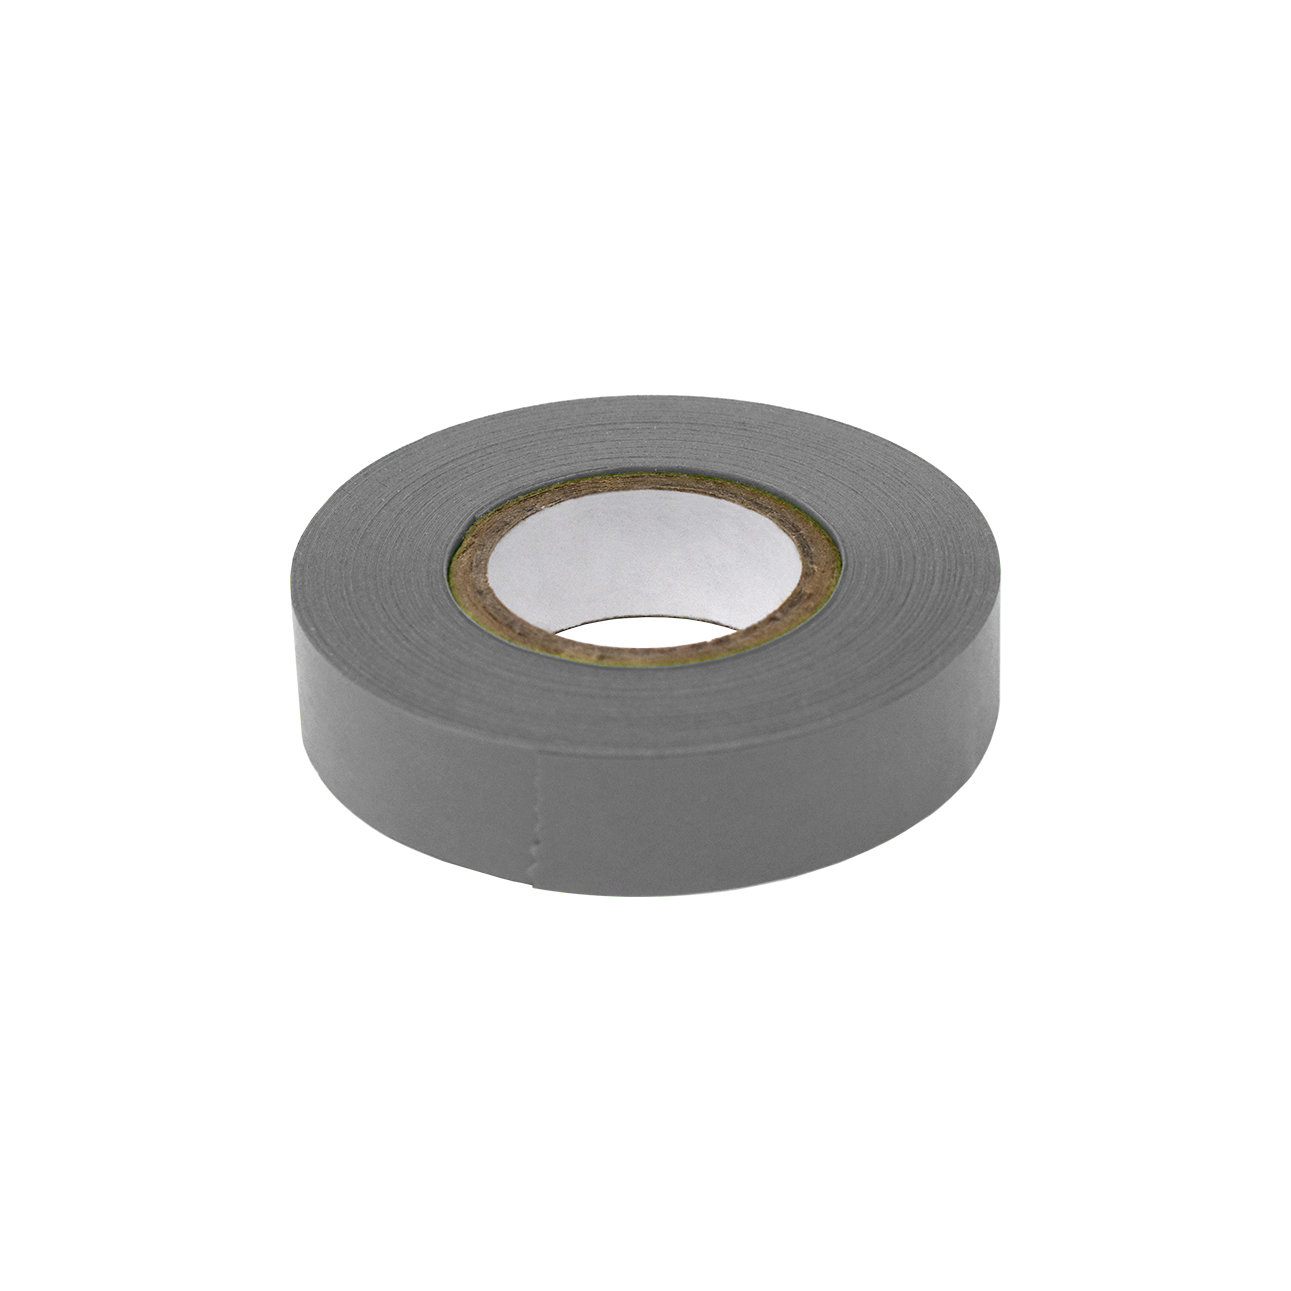 Globe Scientific Labeling Tape, 1/2" x 500" per Roll, 6 Rolls/Box, Silver 